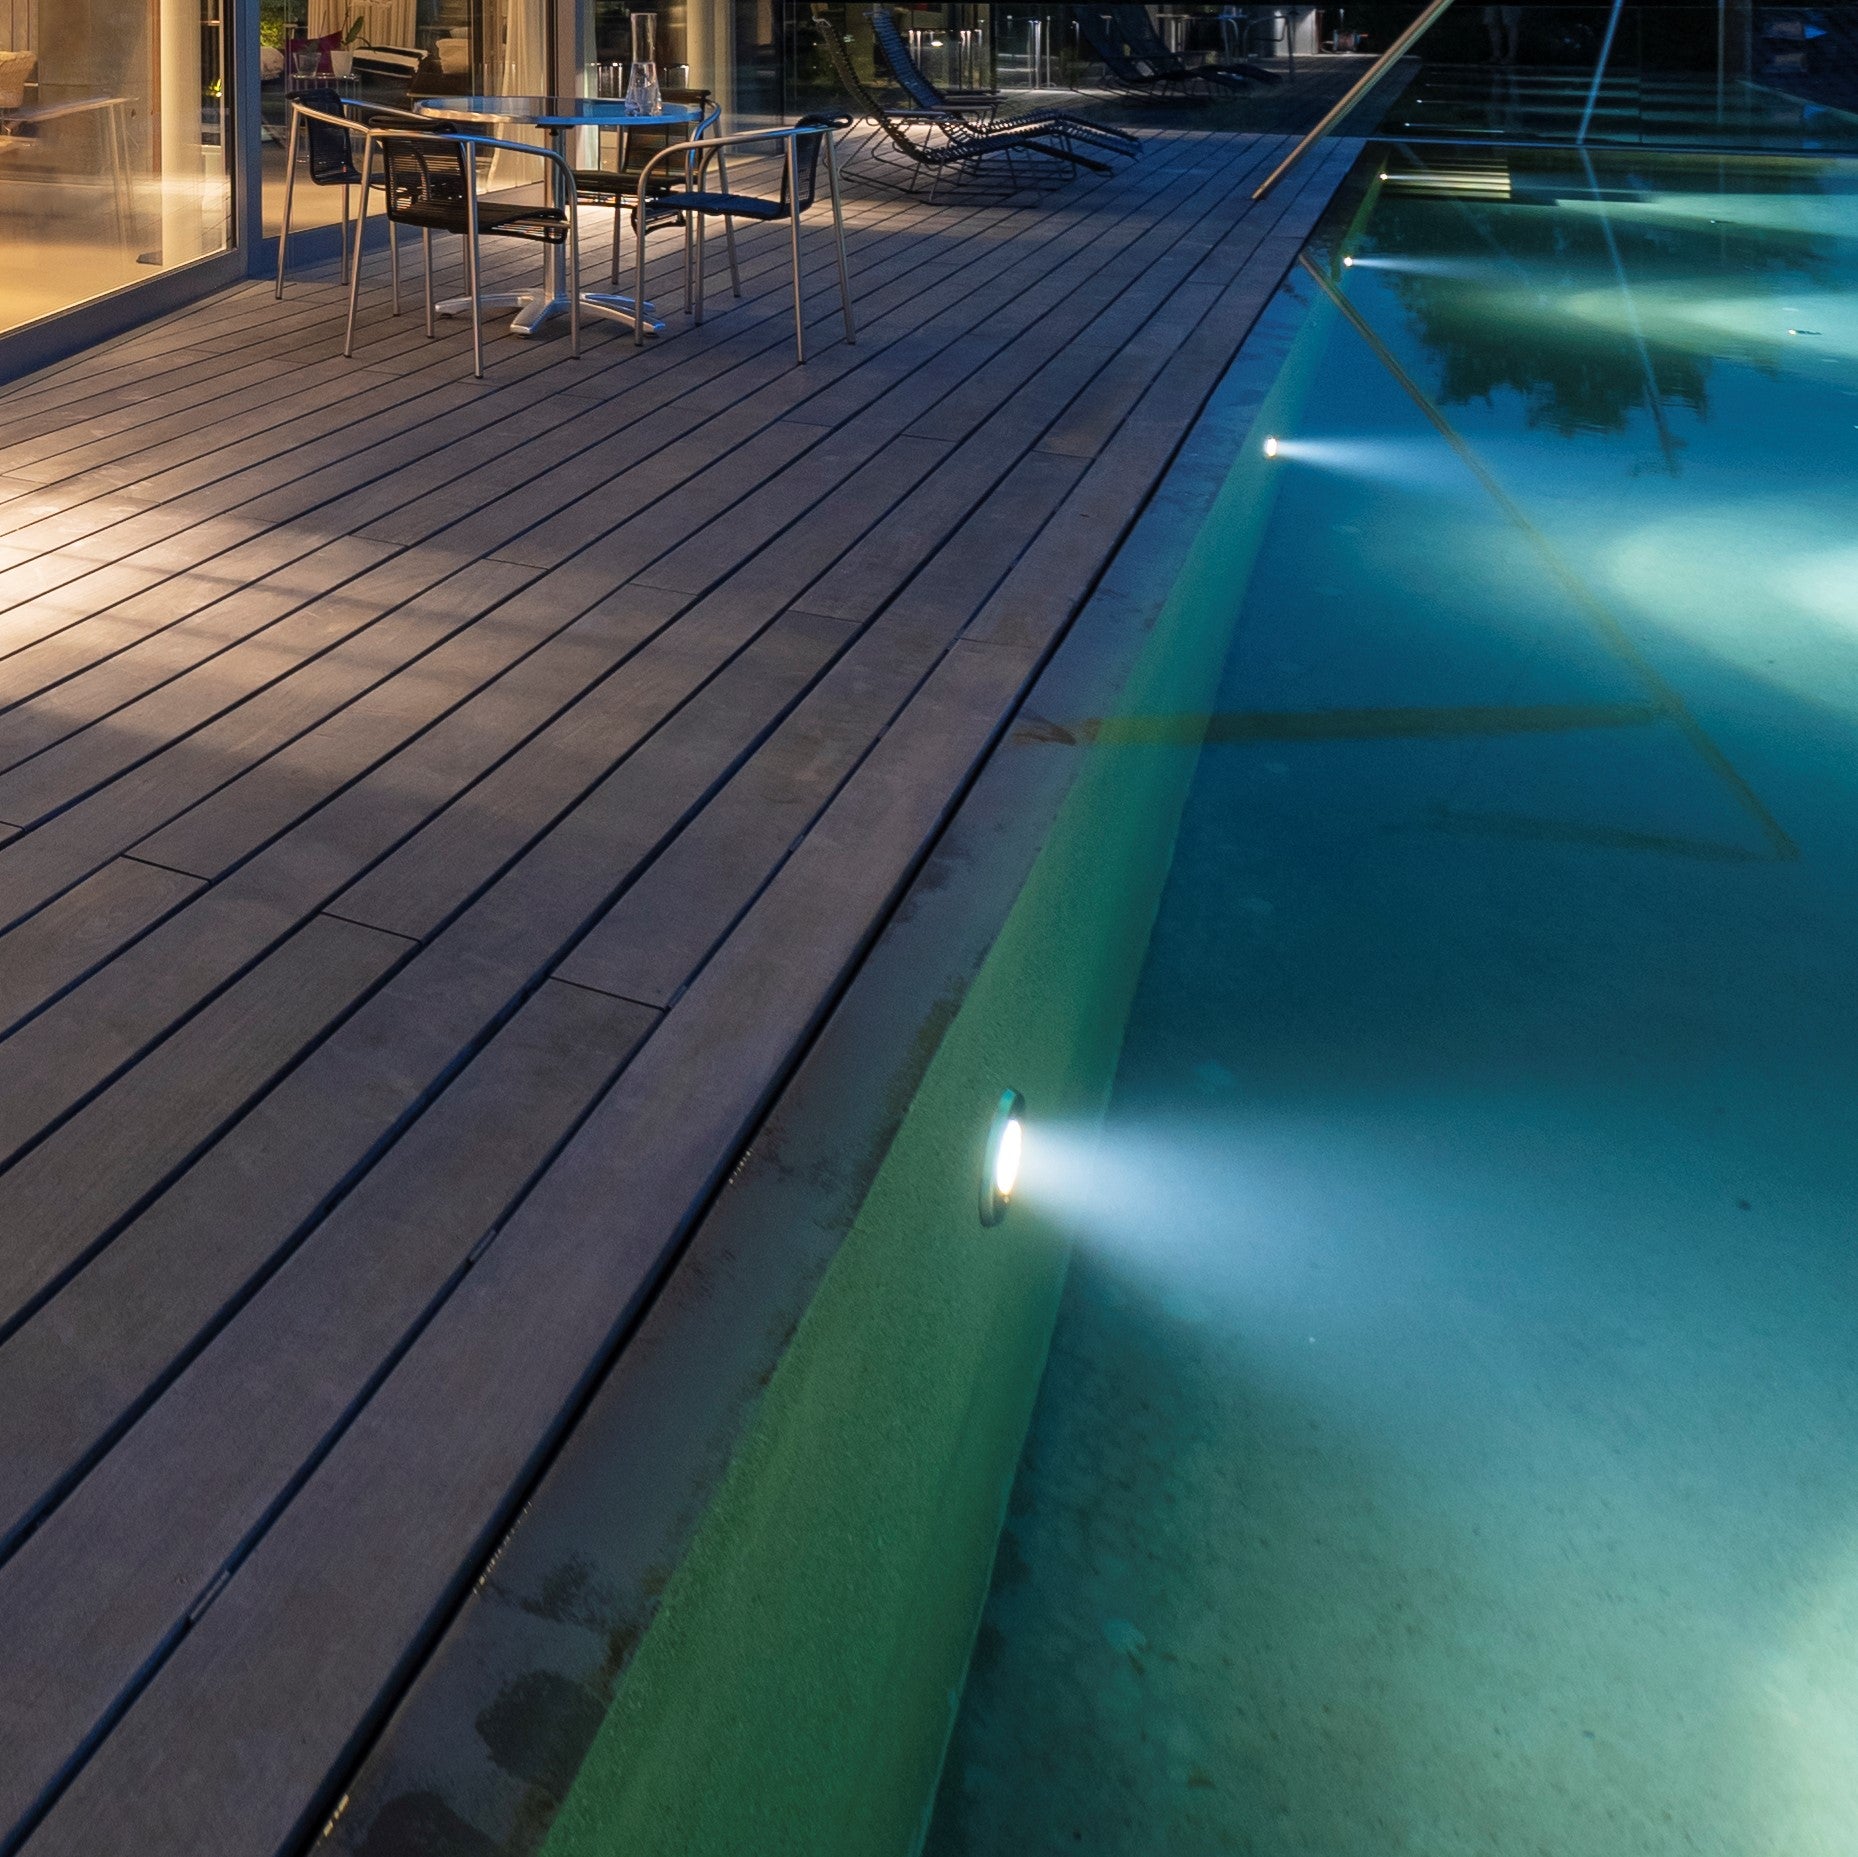 lampe leds PAR56 option télécommande pour projecteur piscine